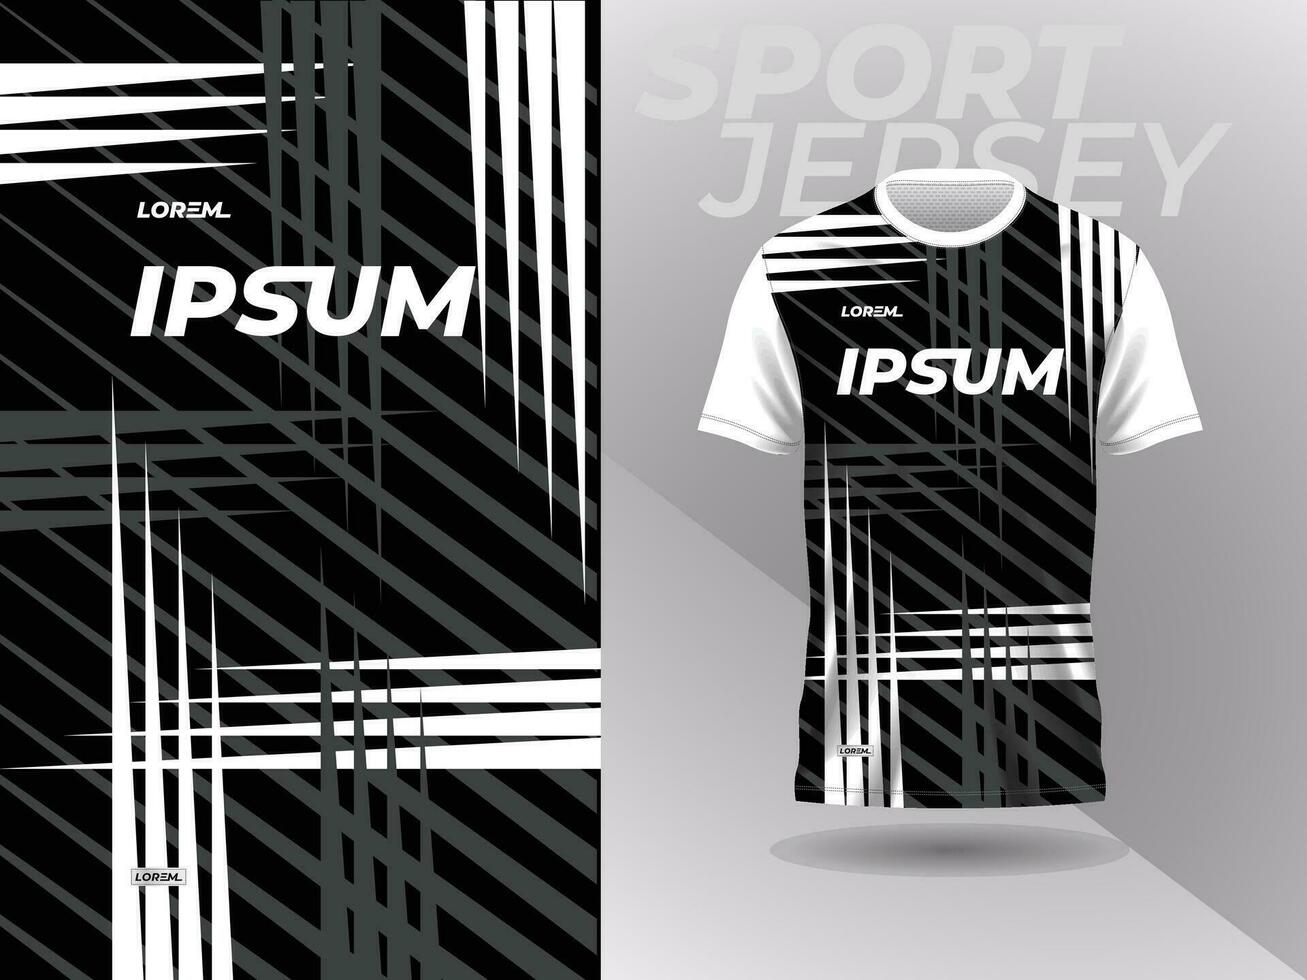 svart vit skjorta sport jersey attrapp mall design för fotboll, fotboll, tävlings, spel, motocross, cykling, och löpning vektor